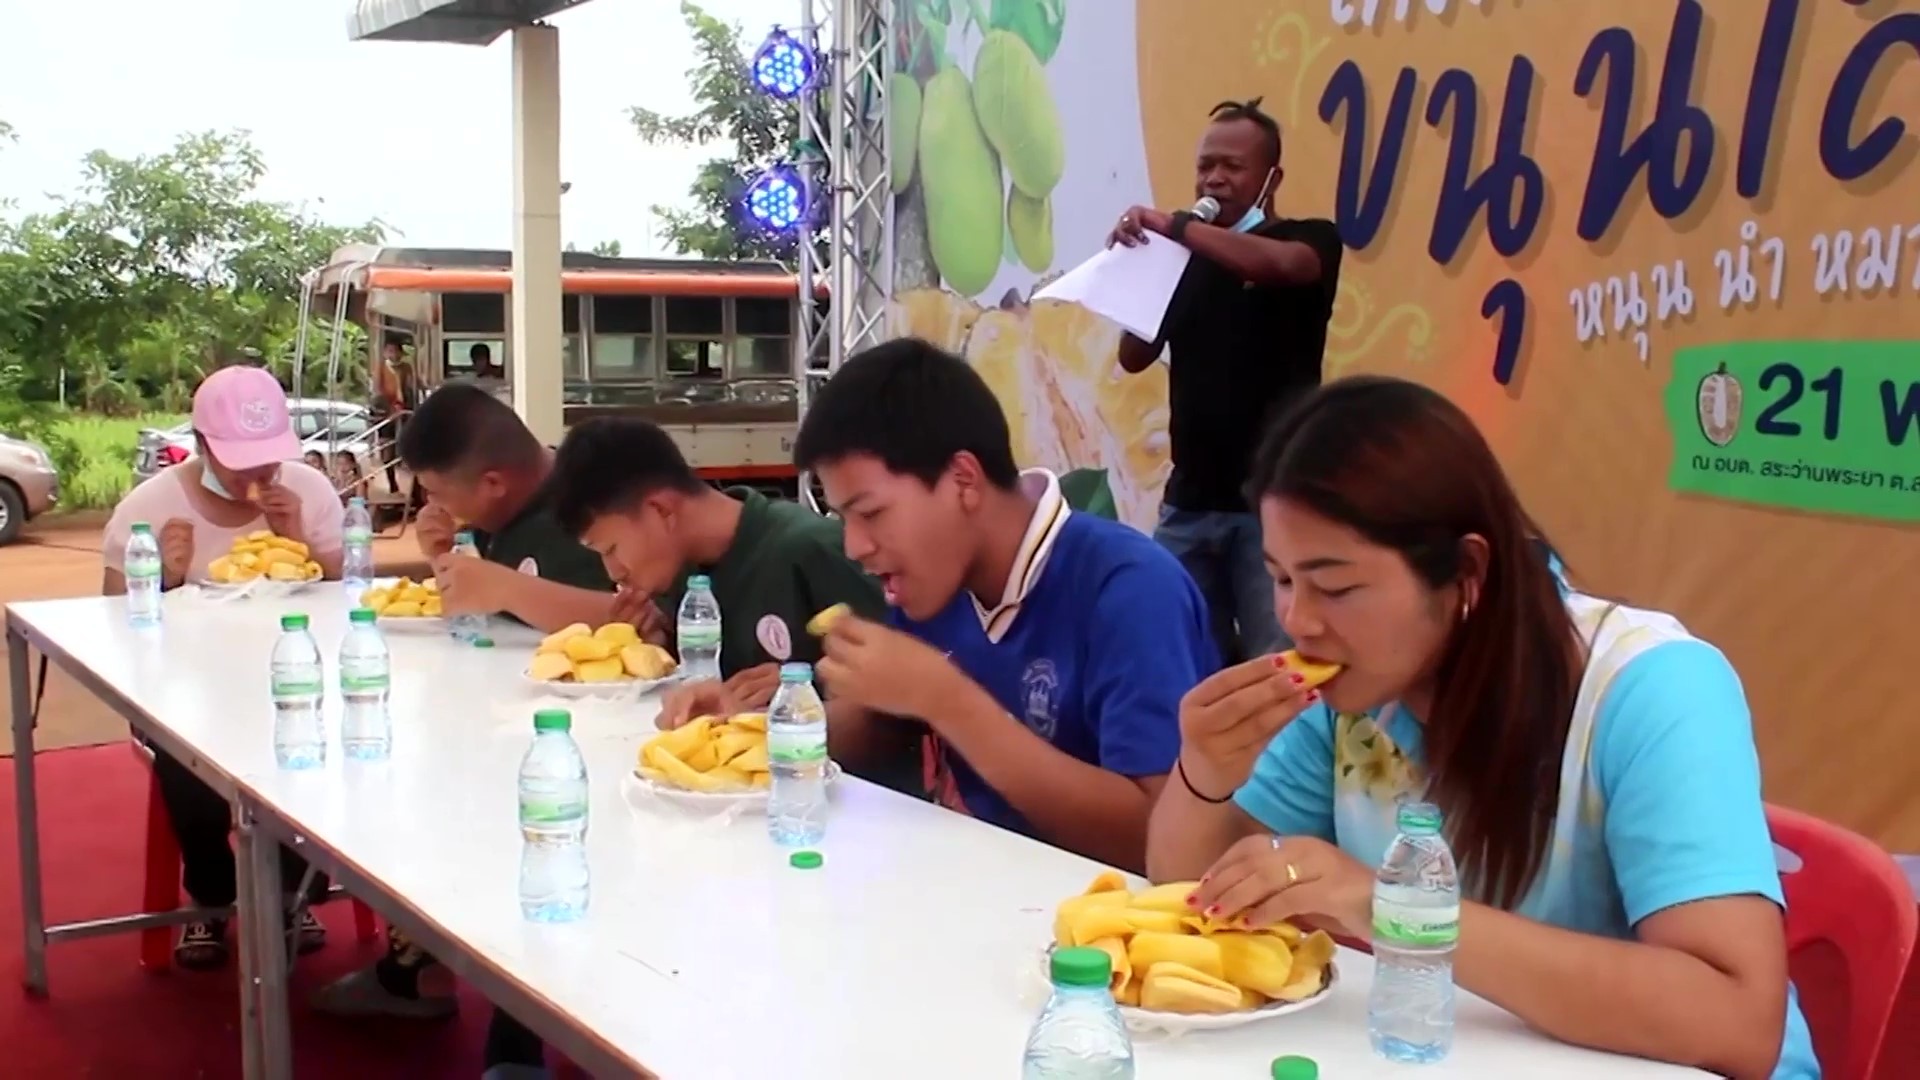 Concurso premiava quem comesse mais jaca em festival na Tailândia (Foto: Newsflare)